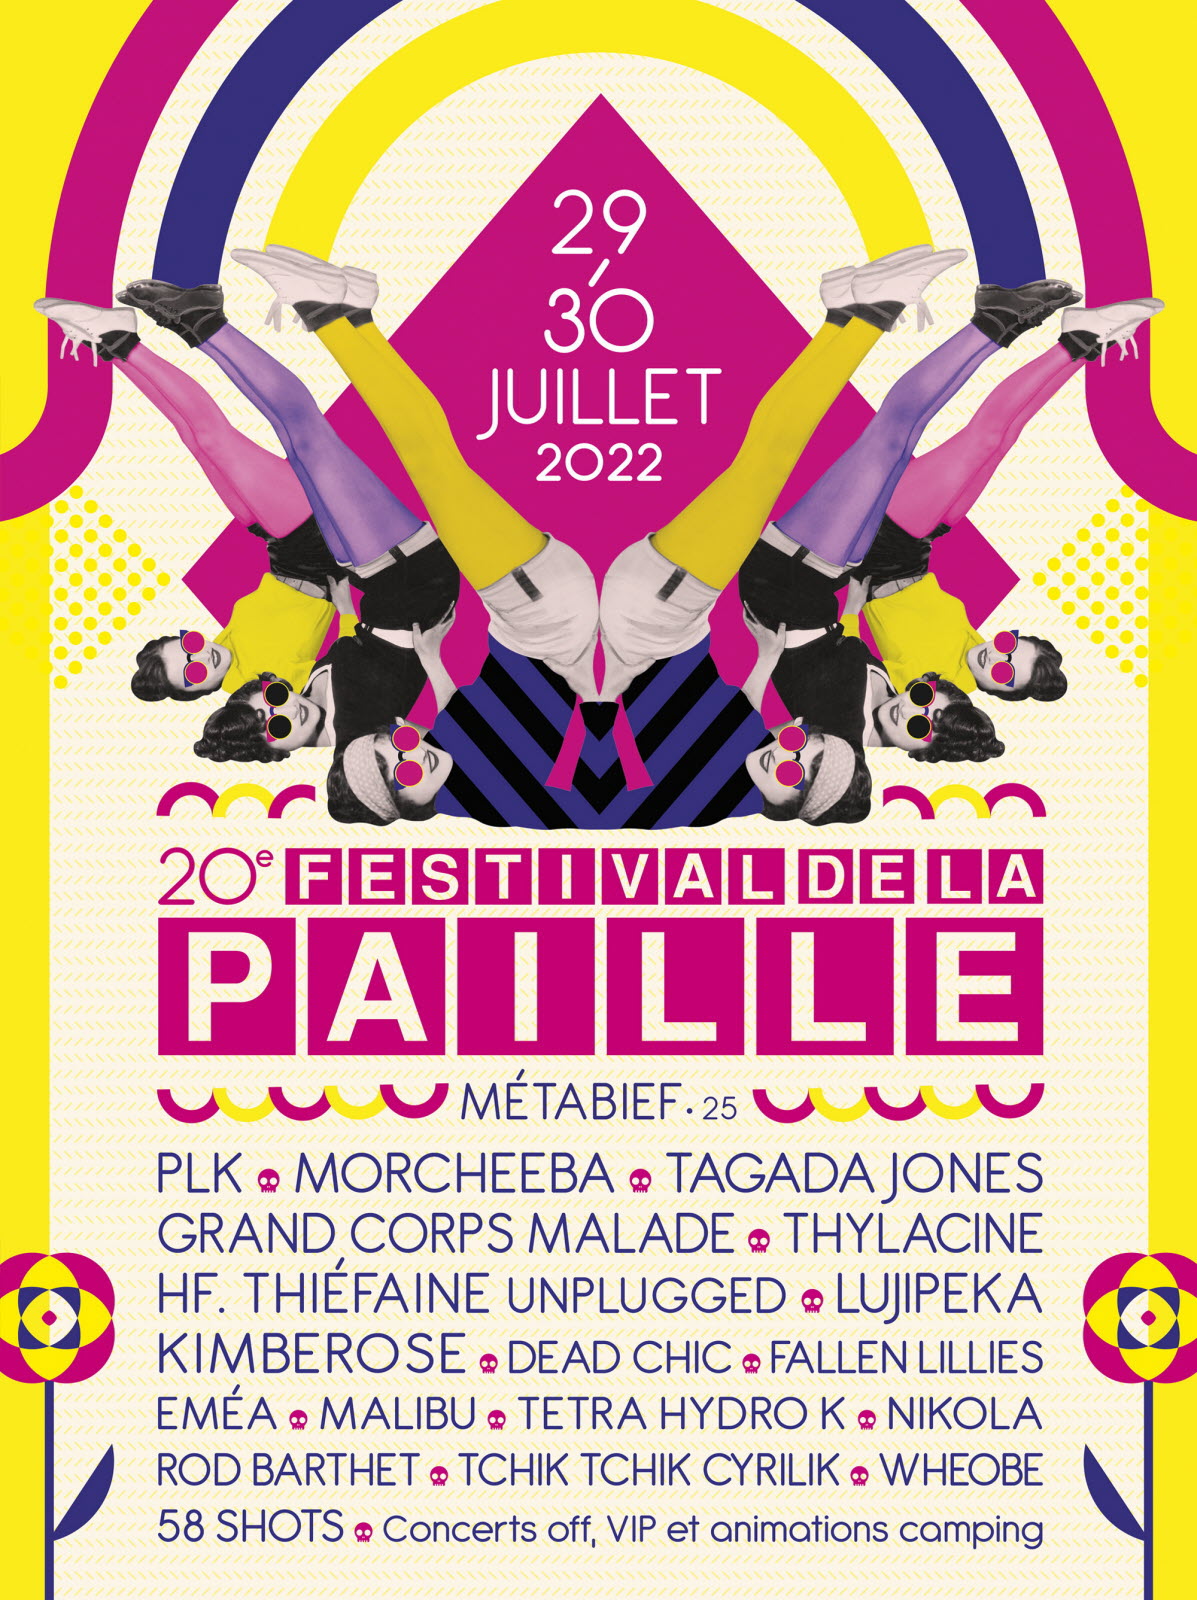 Festival de la Paille - 29-30 juillet 2022